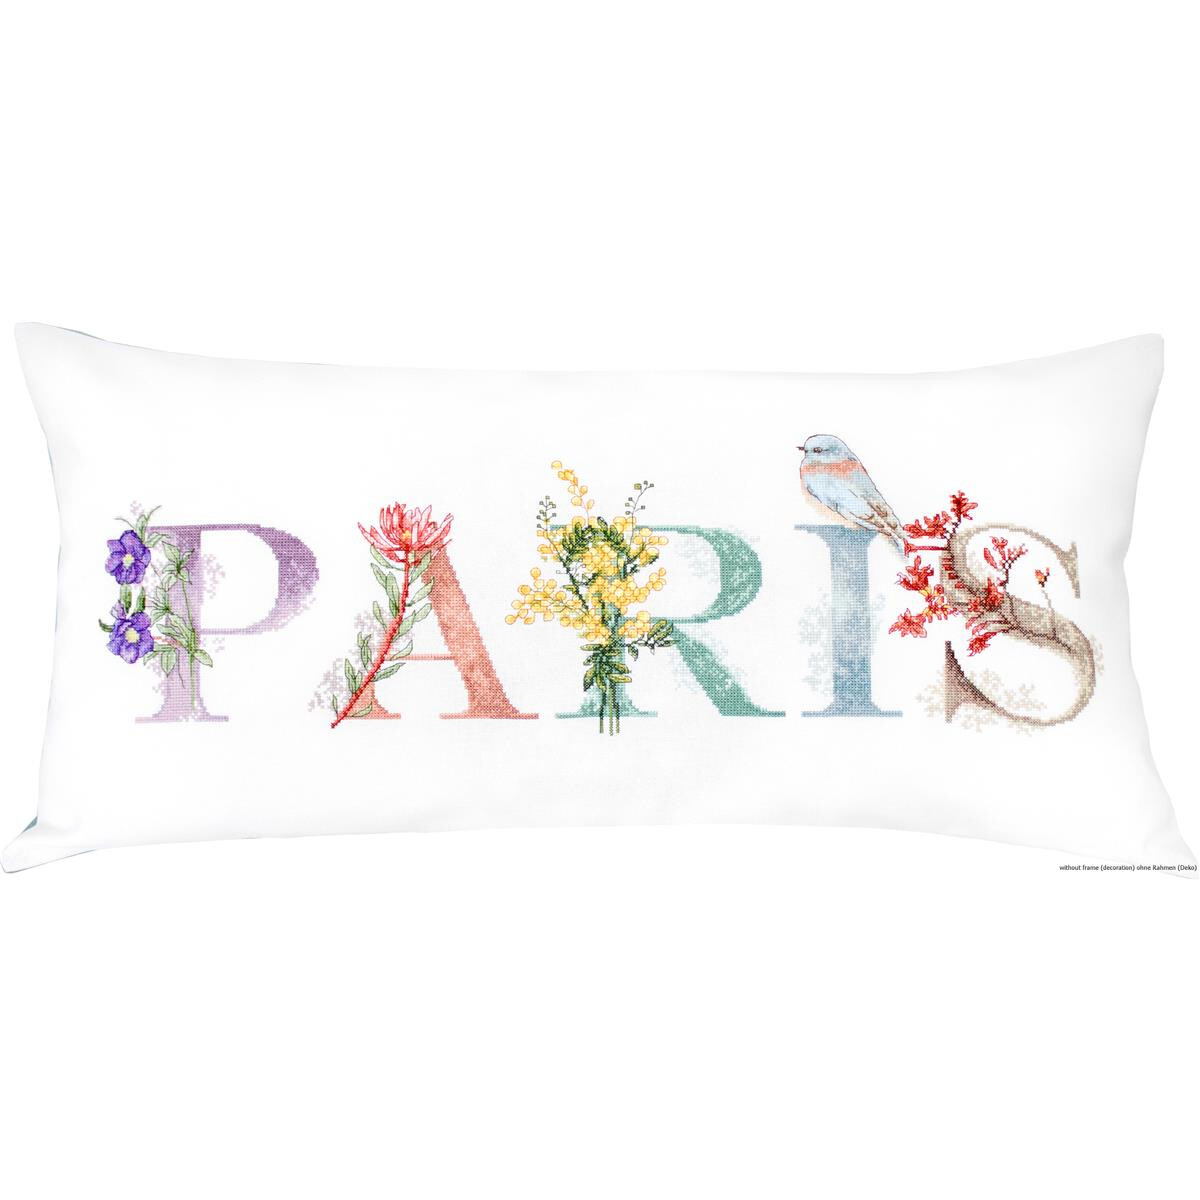 Het woord PARIJS staat in kleurrijke, gebloemde letters...